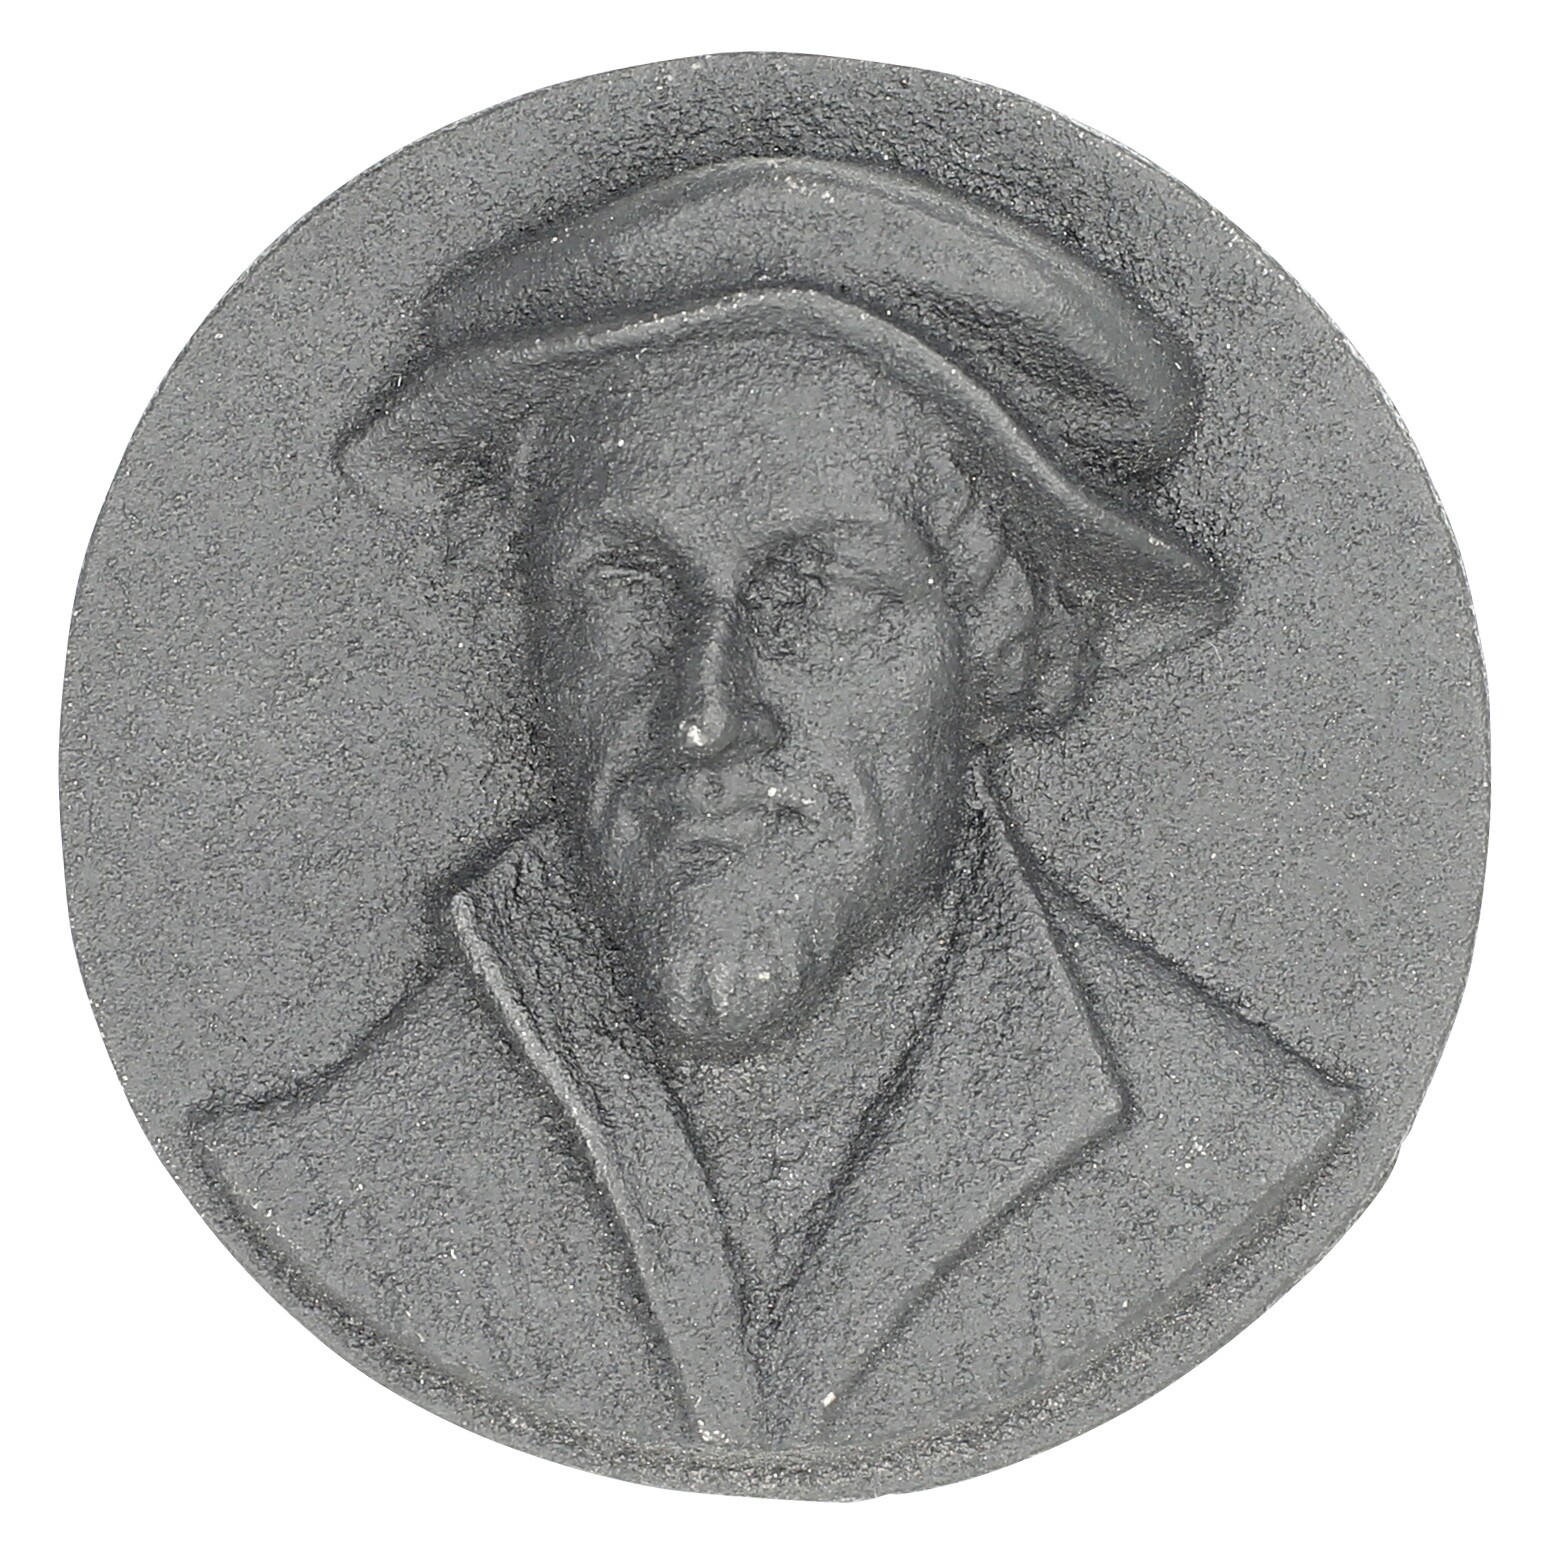 Einseitiges Eisengussmedaillon von 1983 nach dem Model von Leonhard Posch (1750-1831) DDR-Medaille (Museum im Melanchthonhaus Bretten CC BY-NC-SA)